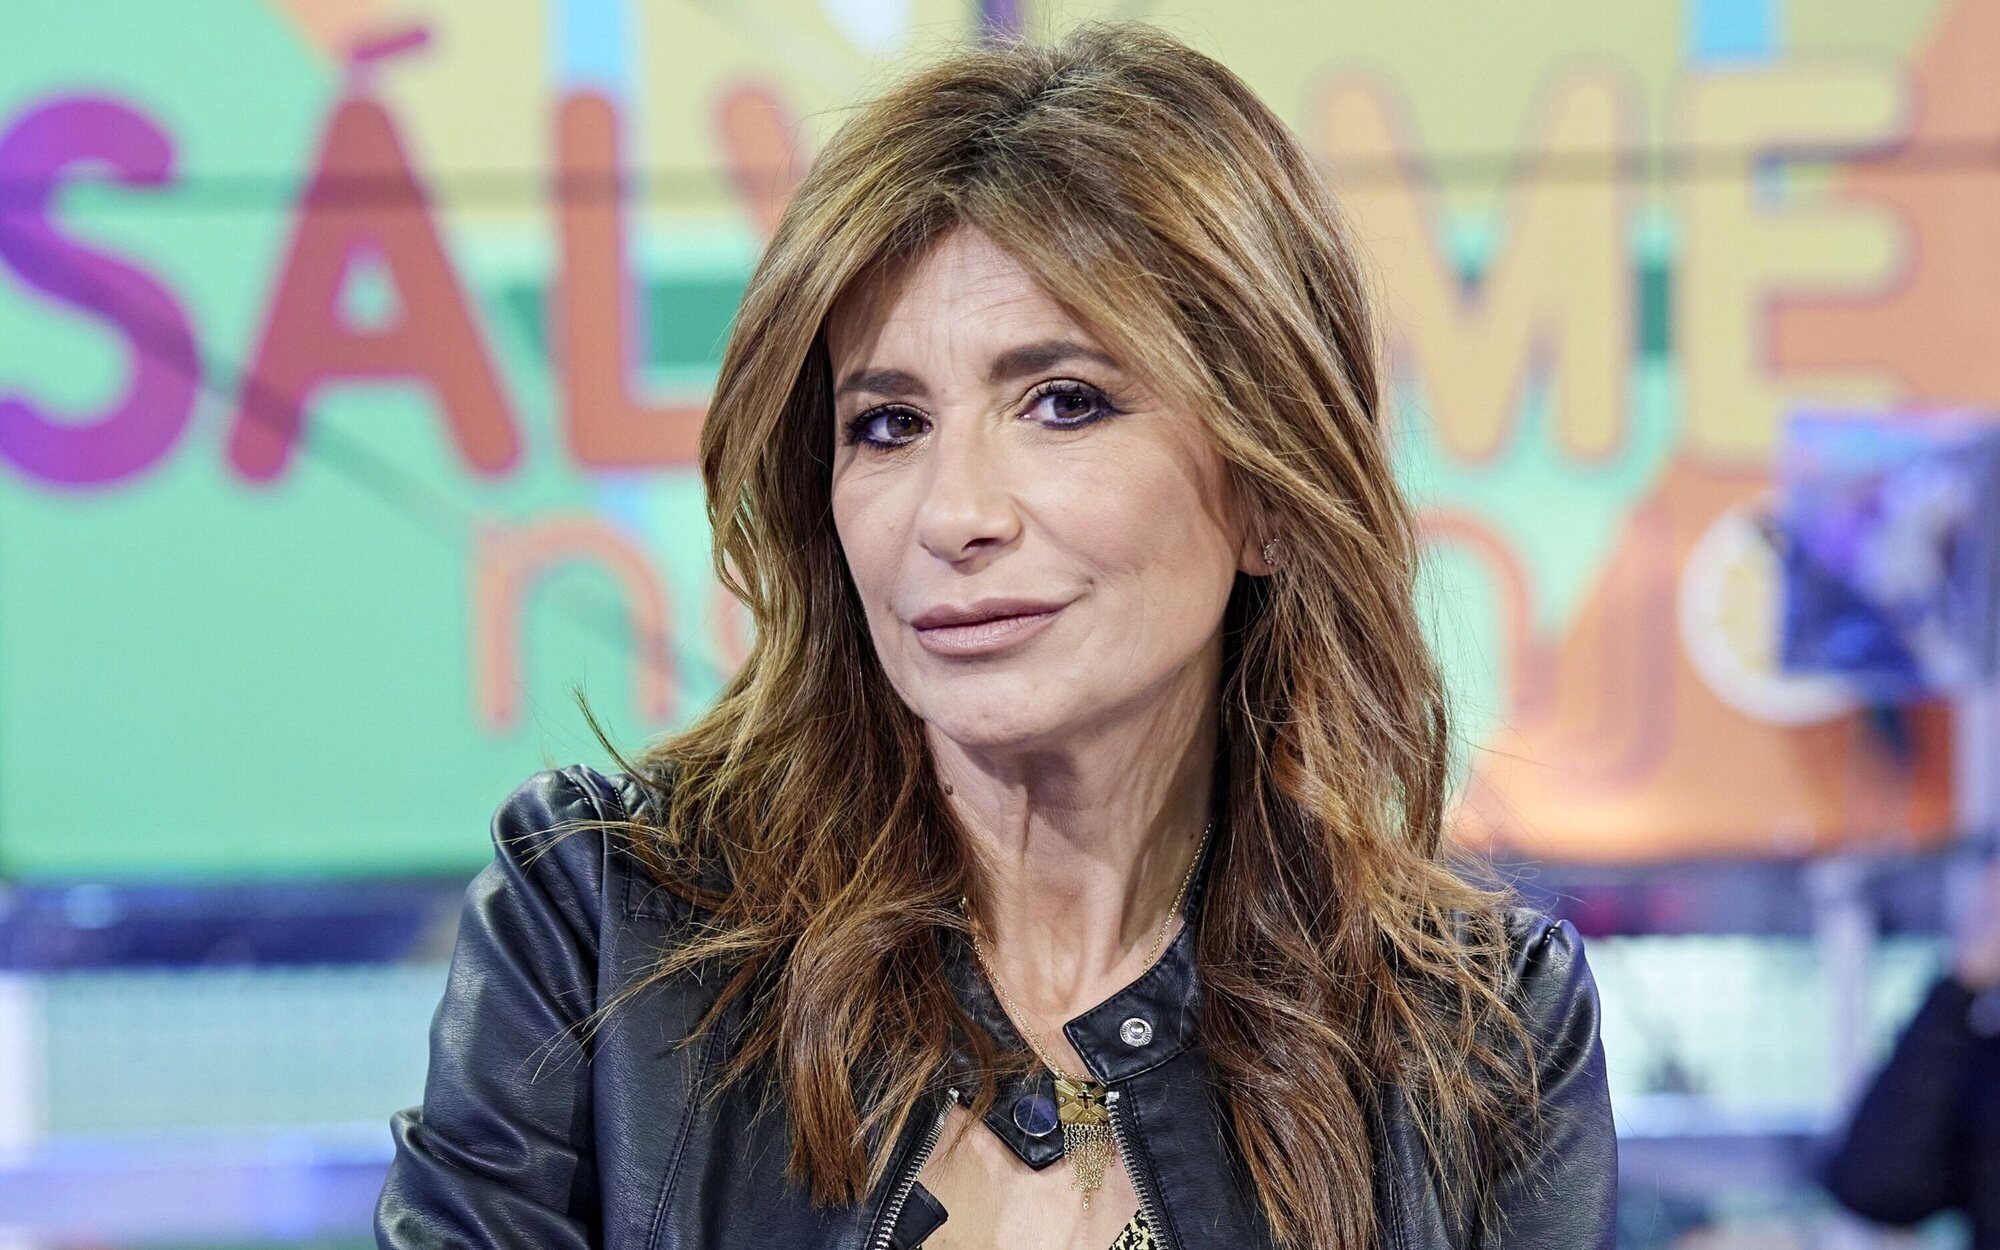 Gema López ficha como copresentadora de 'Espejo público' tras el final de 'Sálvame'